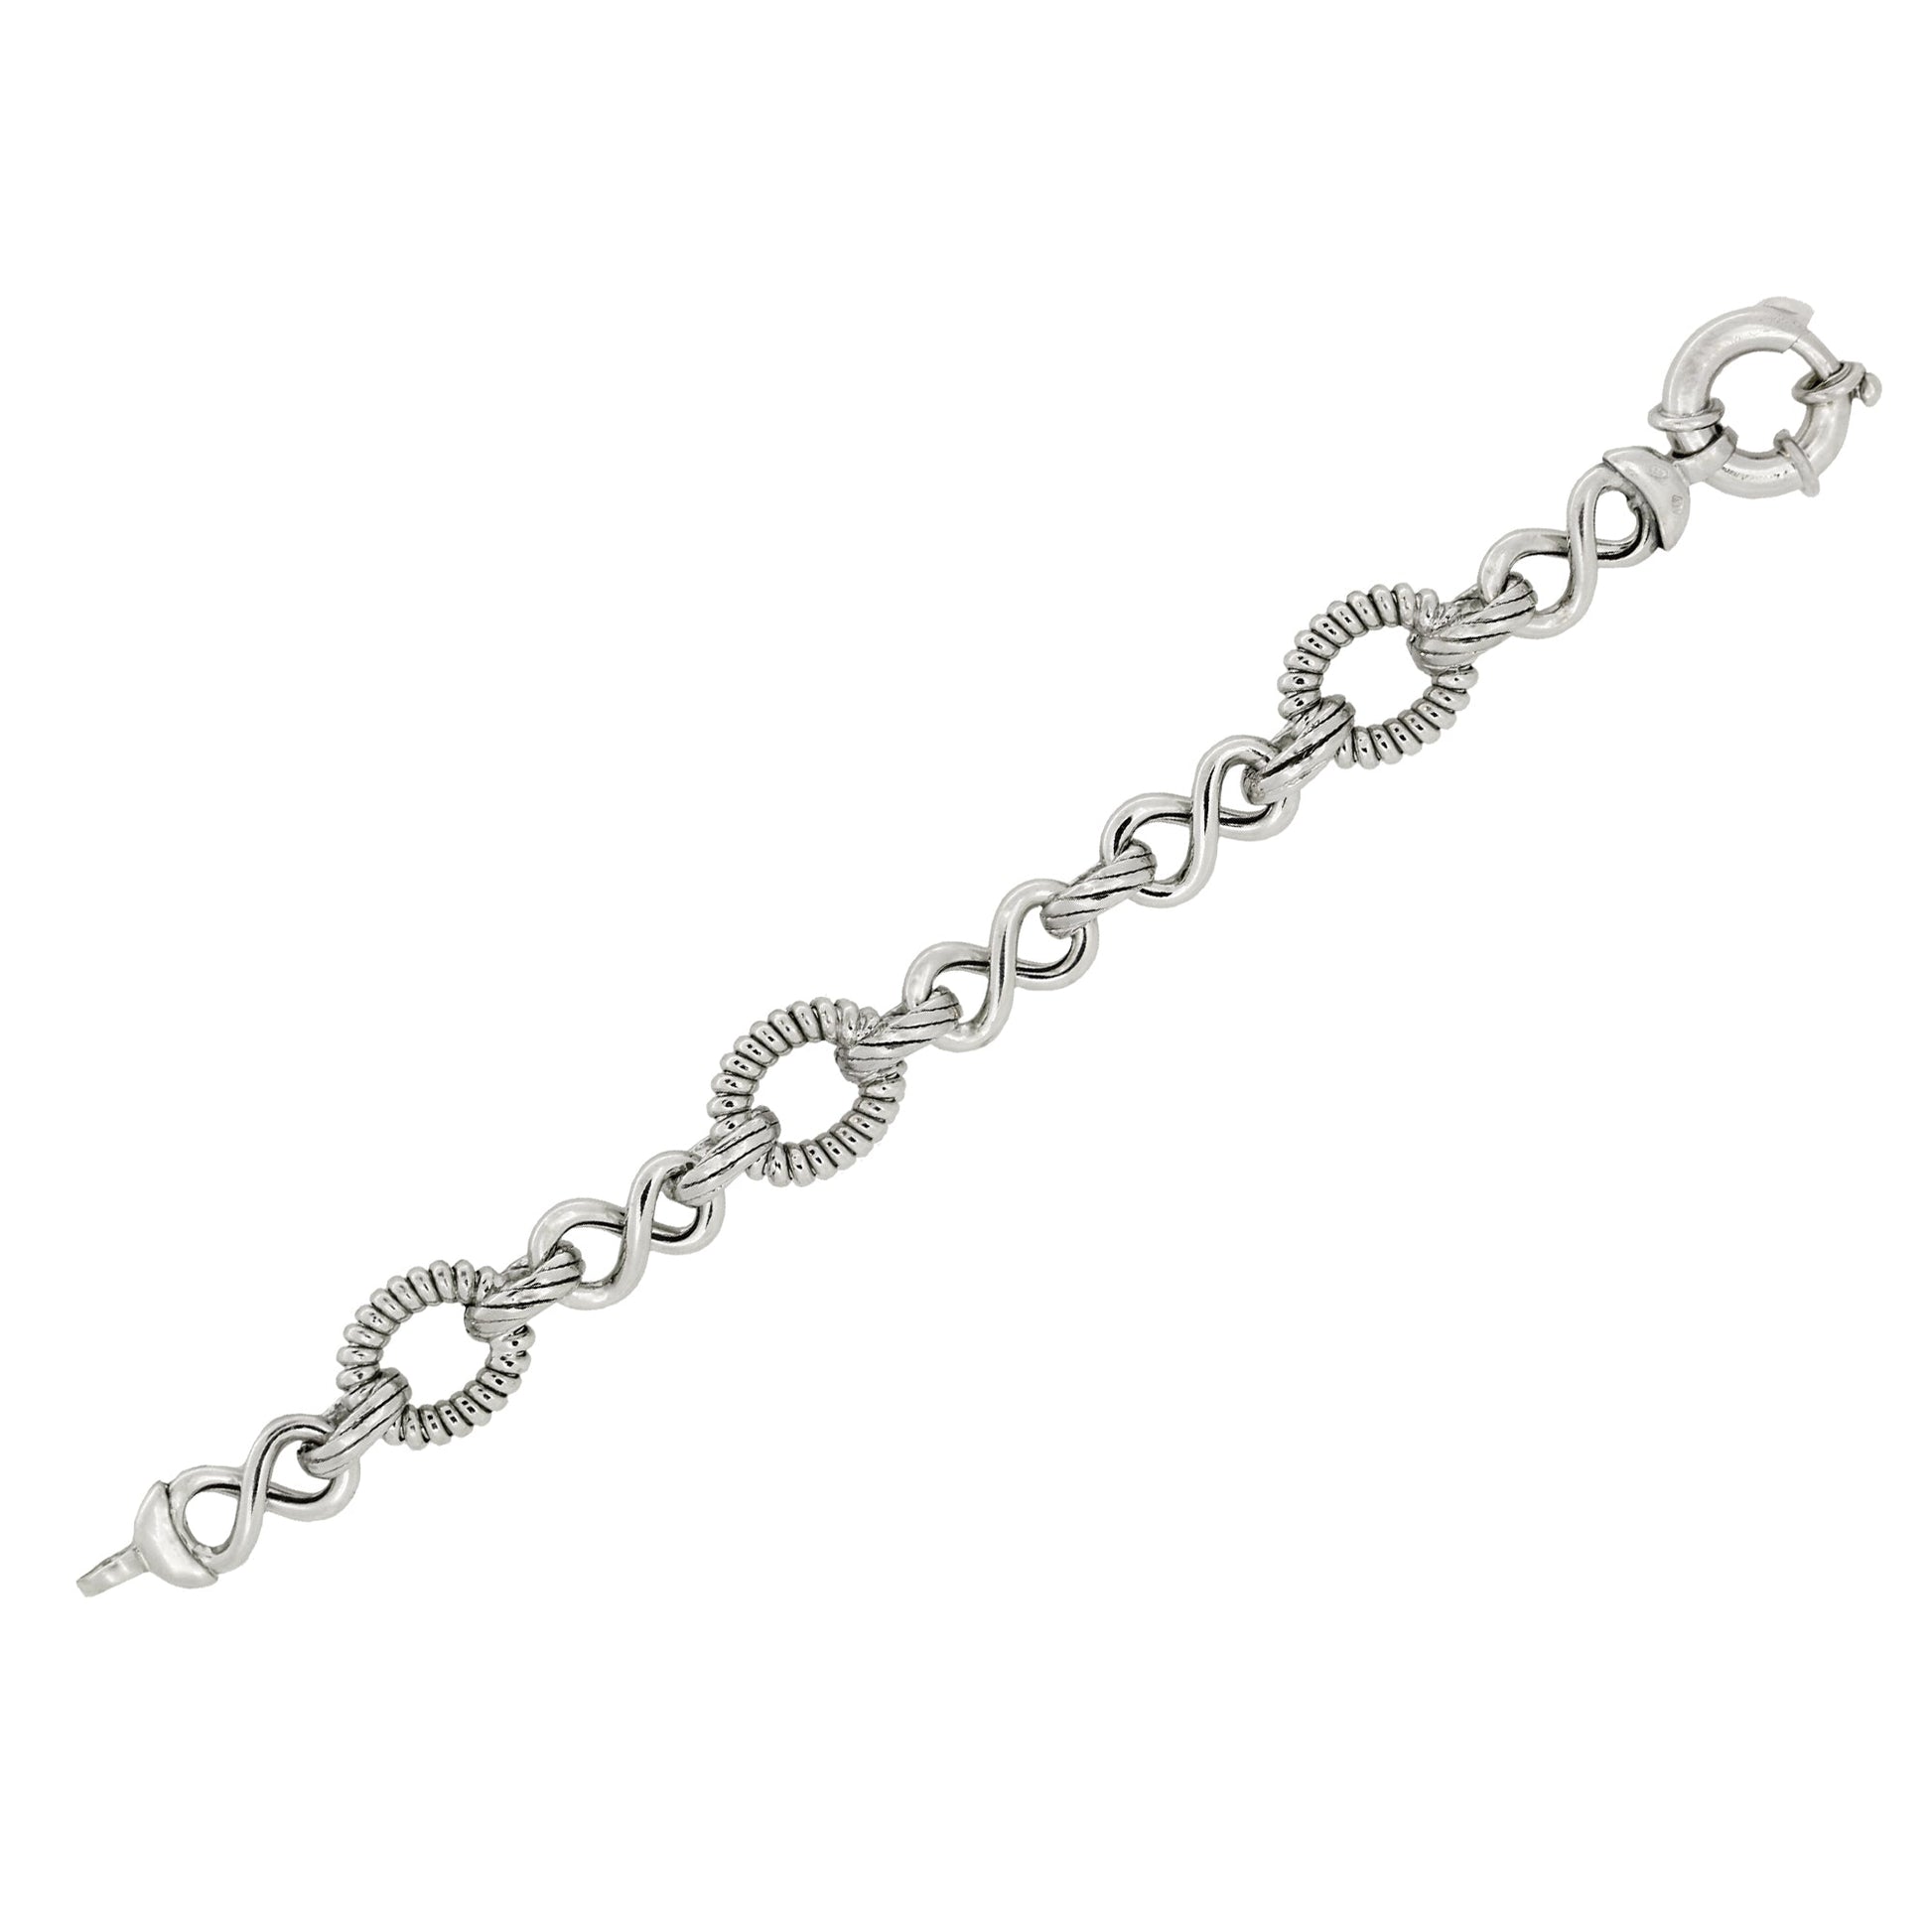 Franco Stellari Italian Sterling Silver Fancy Infinity Link Bracelet, 7.5"